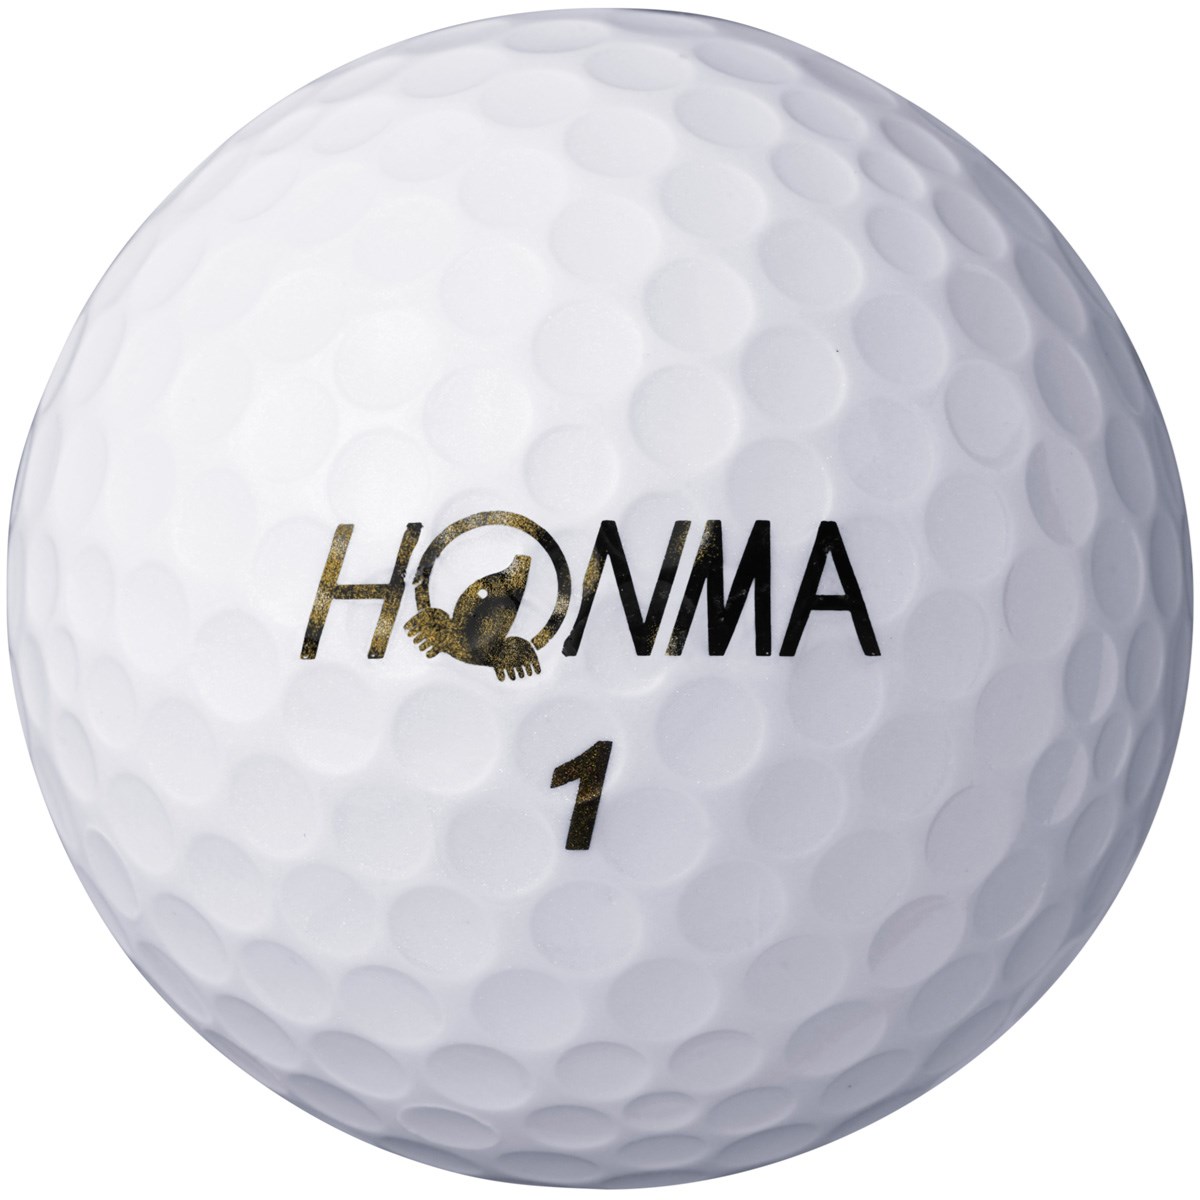 『新品・送料無料』 本間ゴルフ HONMA D1 ゴルフボール 1ダース [マルチ] 12ダースセット - salisburybeast.com